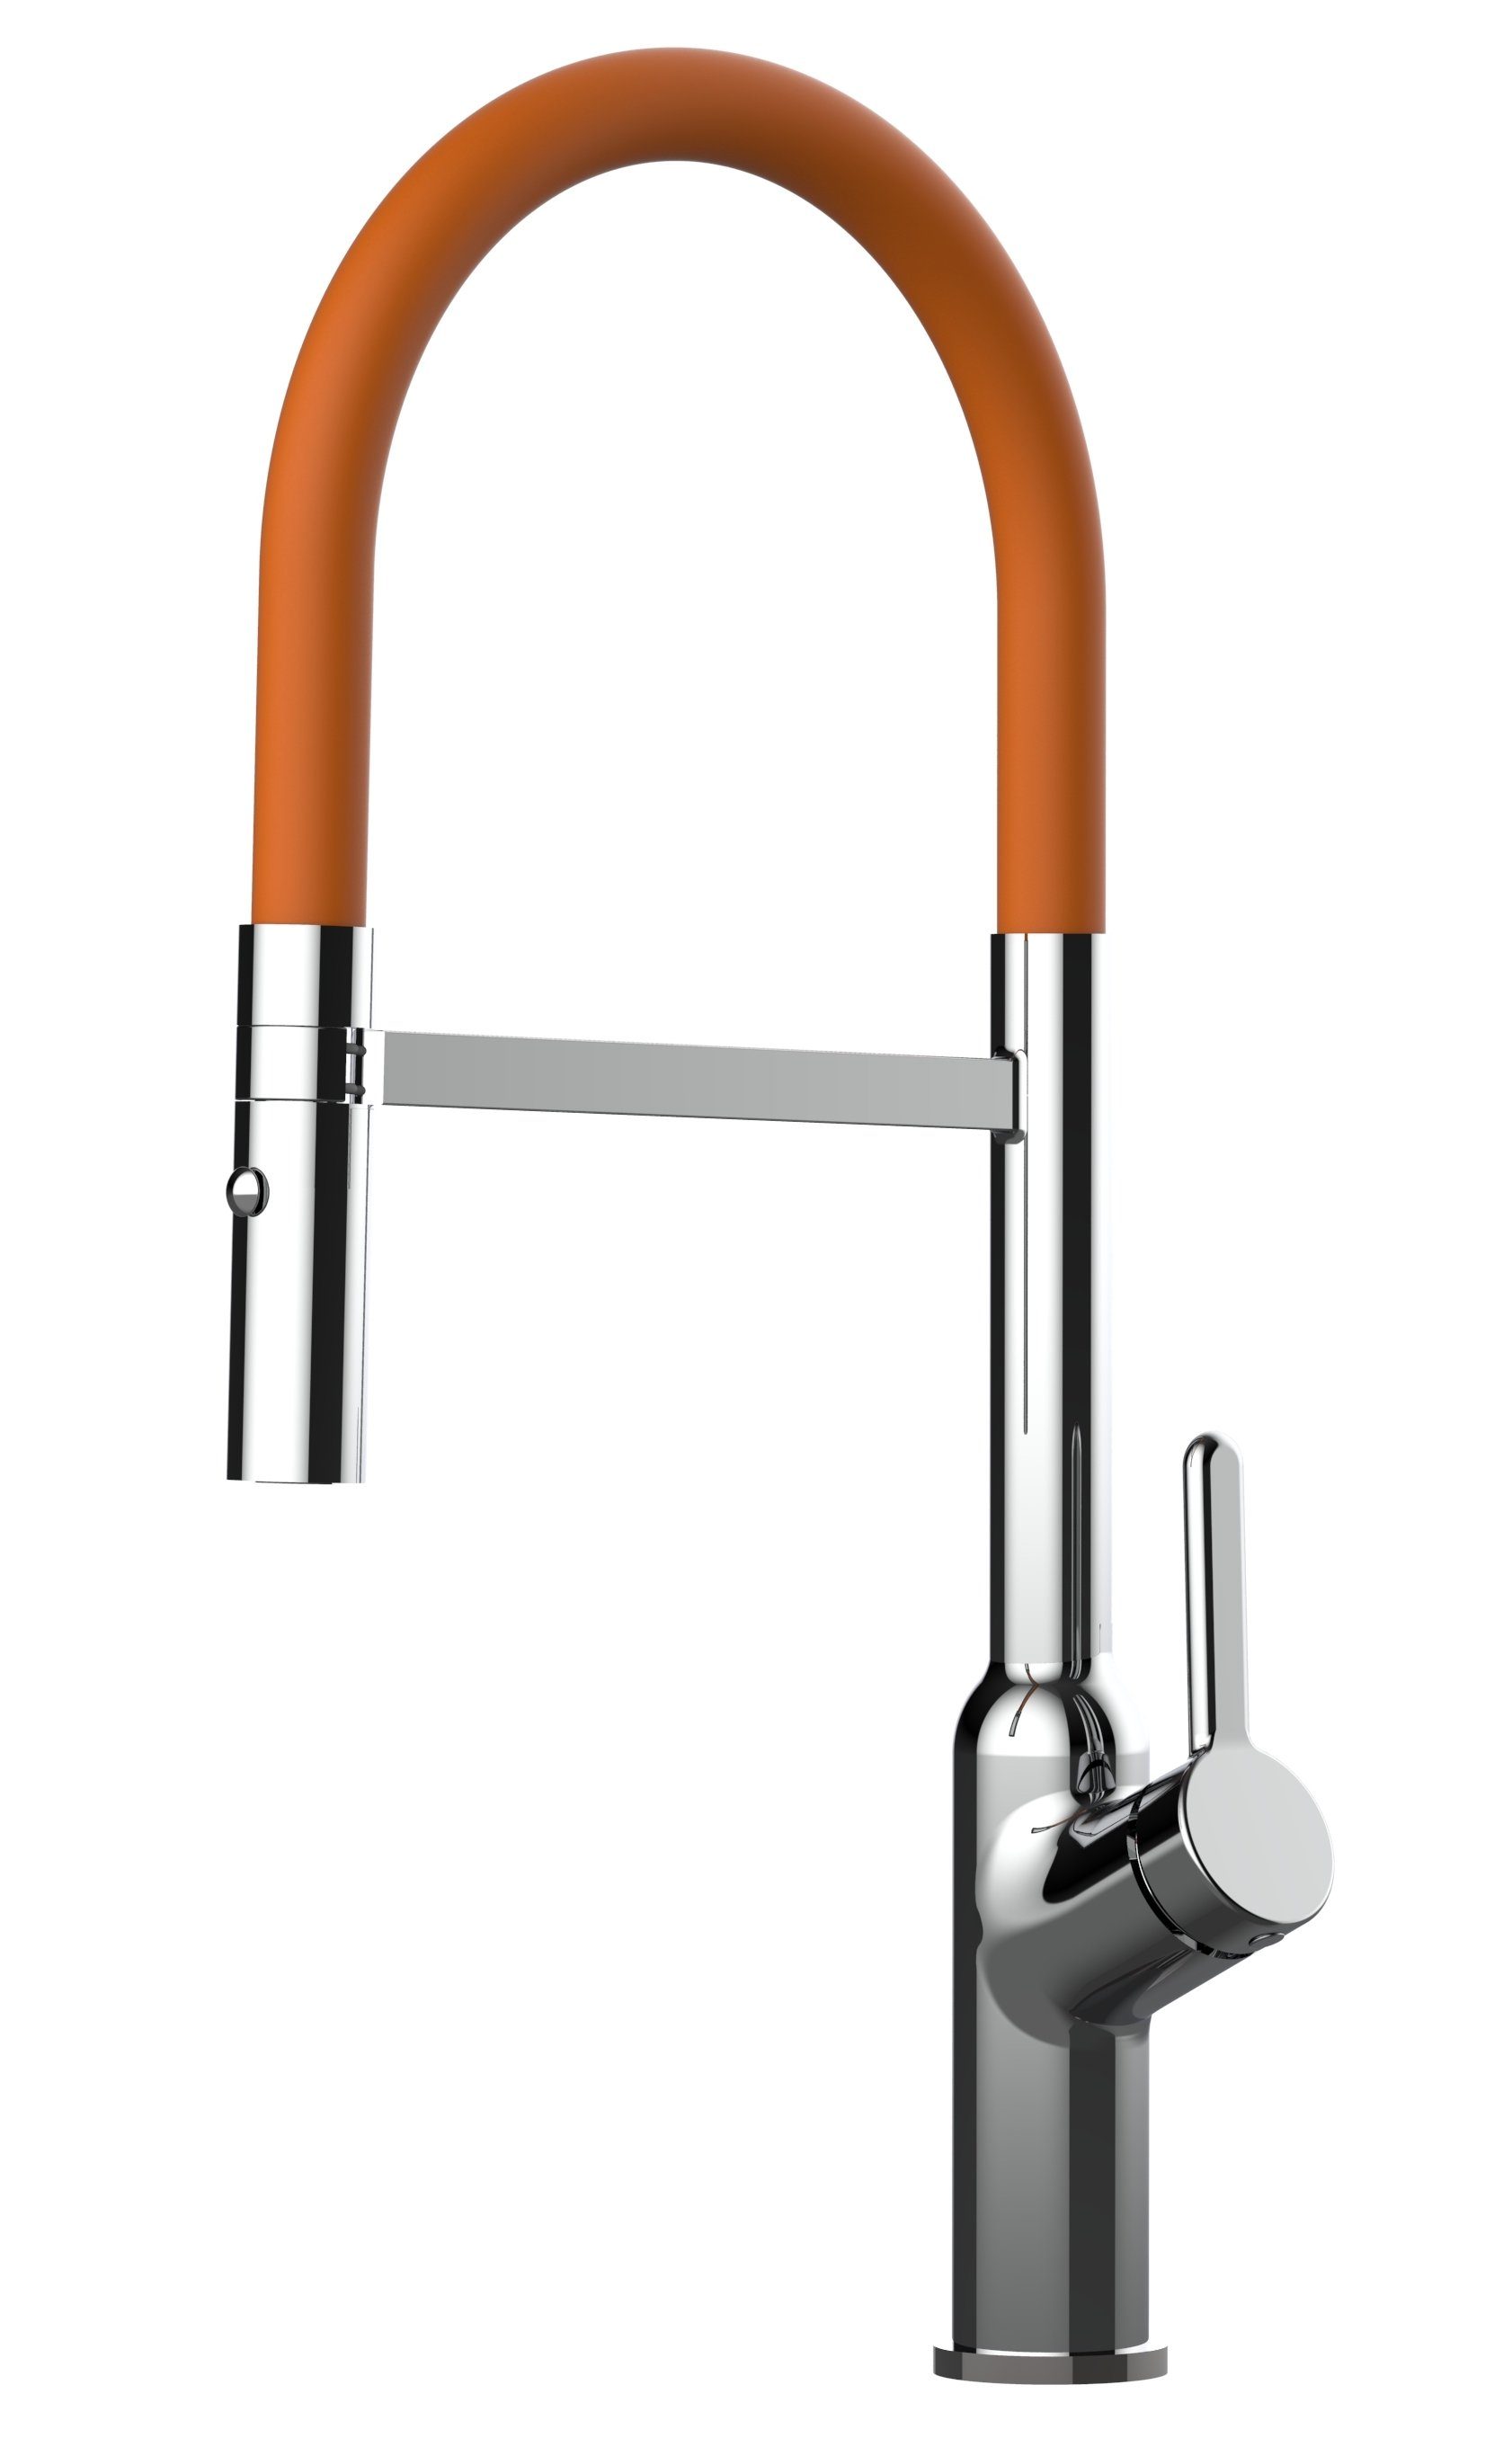 VIZIO Küchenarmatur Design Küchenarmatur chrom Wasserhahn mit 360° schwenkbarem Auslauf und abnehmbarer 2 strahl Brause Hochdruck, Hochwertige Verchromung, mit 2Strahl Brause Chrom / Orange